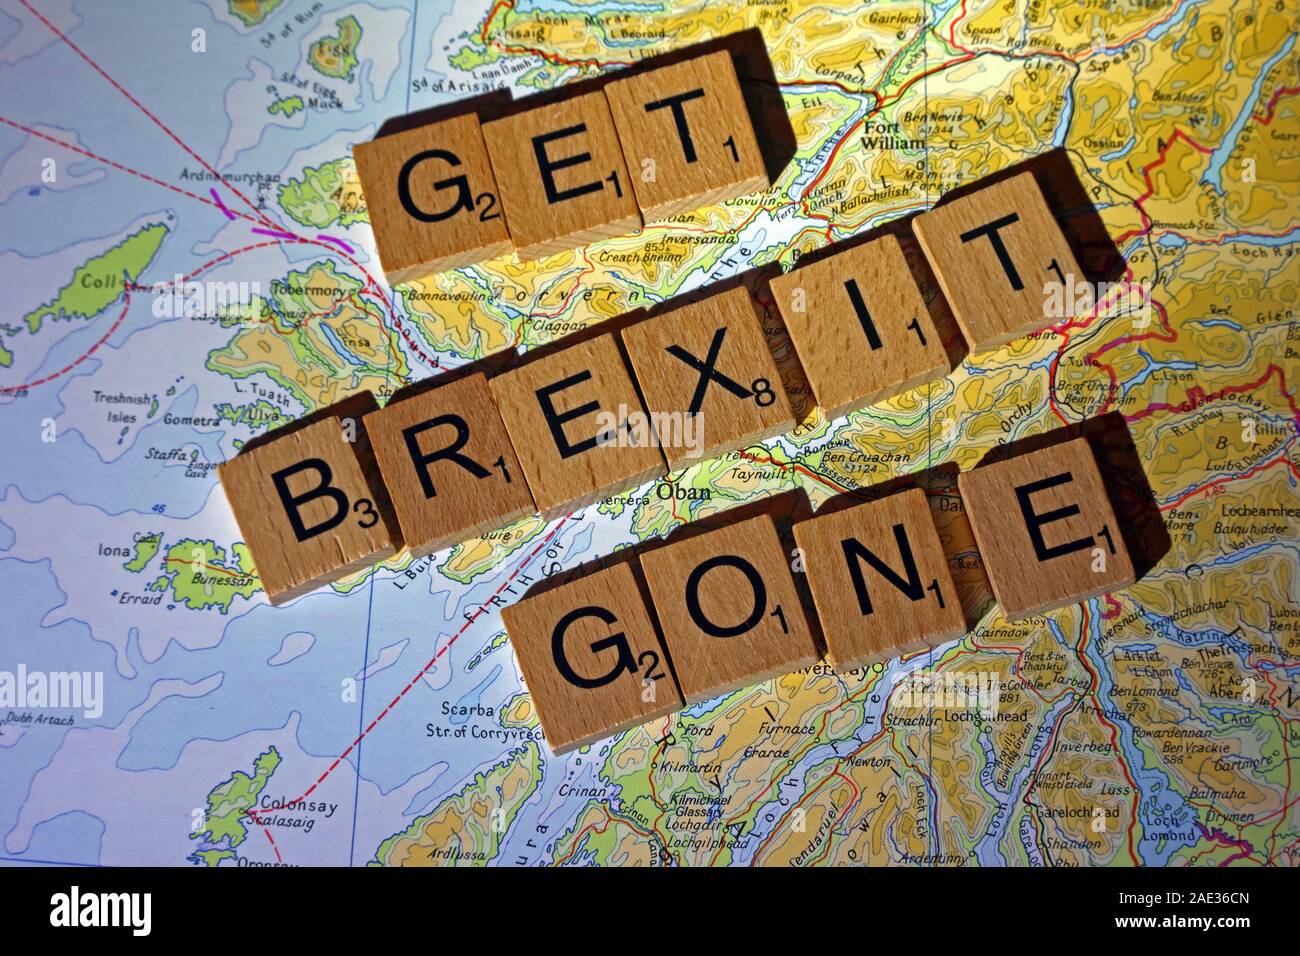 Ottenere Brexit andato scritto in lettere di Scrabble su mappa Scozia - Elezioni generali, alle elezioni politiche di partito leader,,parti,rivendicazioni,dubbi Foto Stock